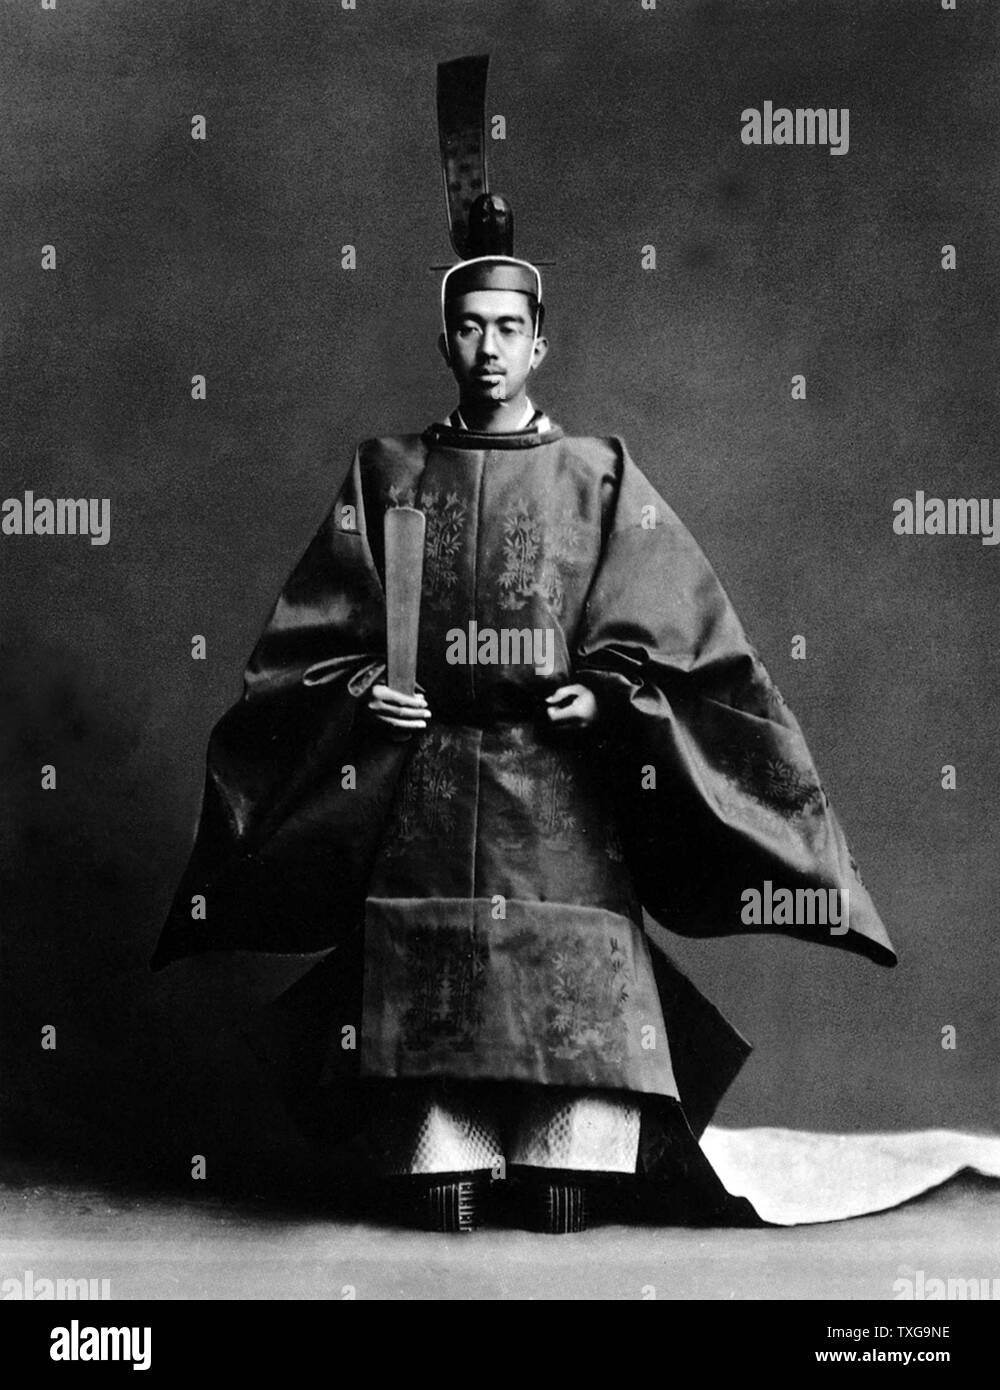 Hirohito, 124e Empereur du Japon au cours de sa cérémonie du couronnement, vêtus de robes des grand prêtre Shinto, de la religion de l'Etat. Banque D'Images